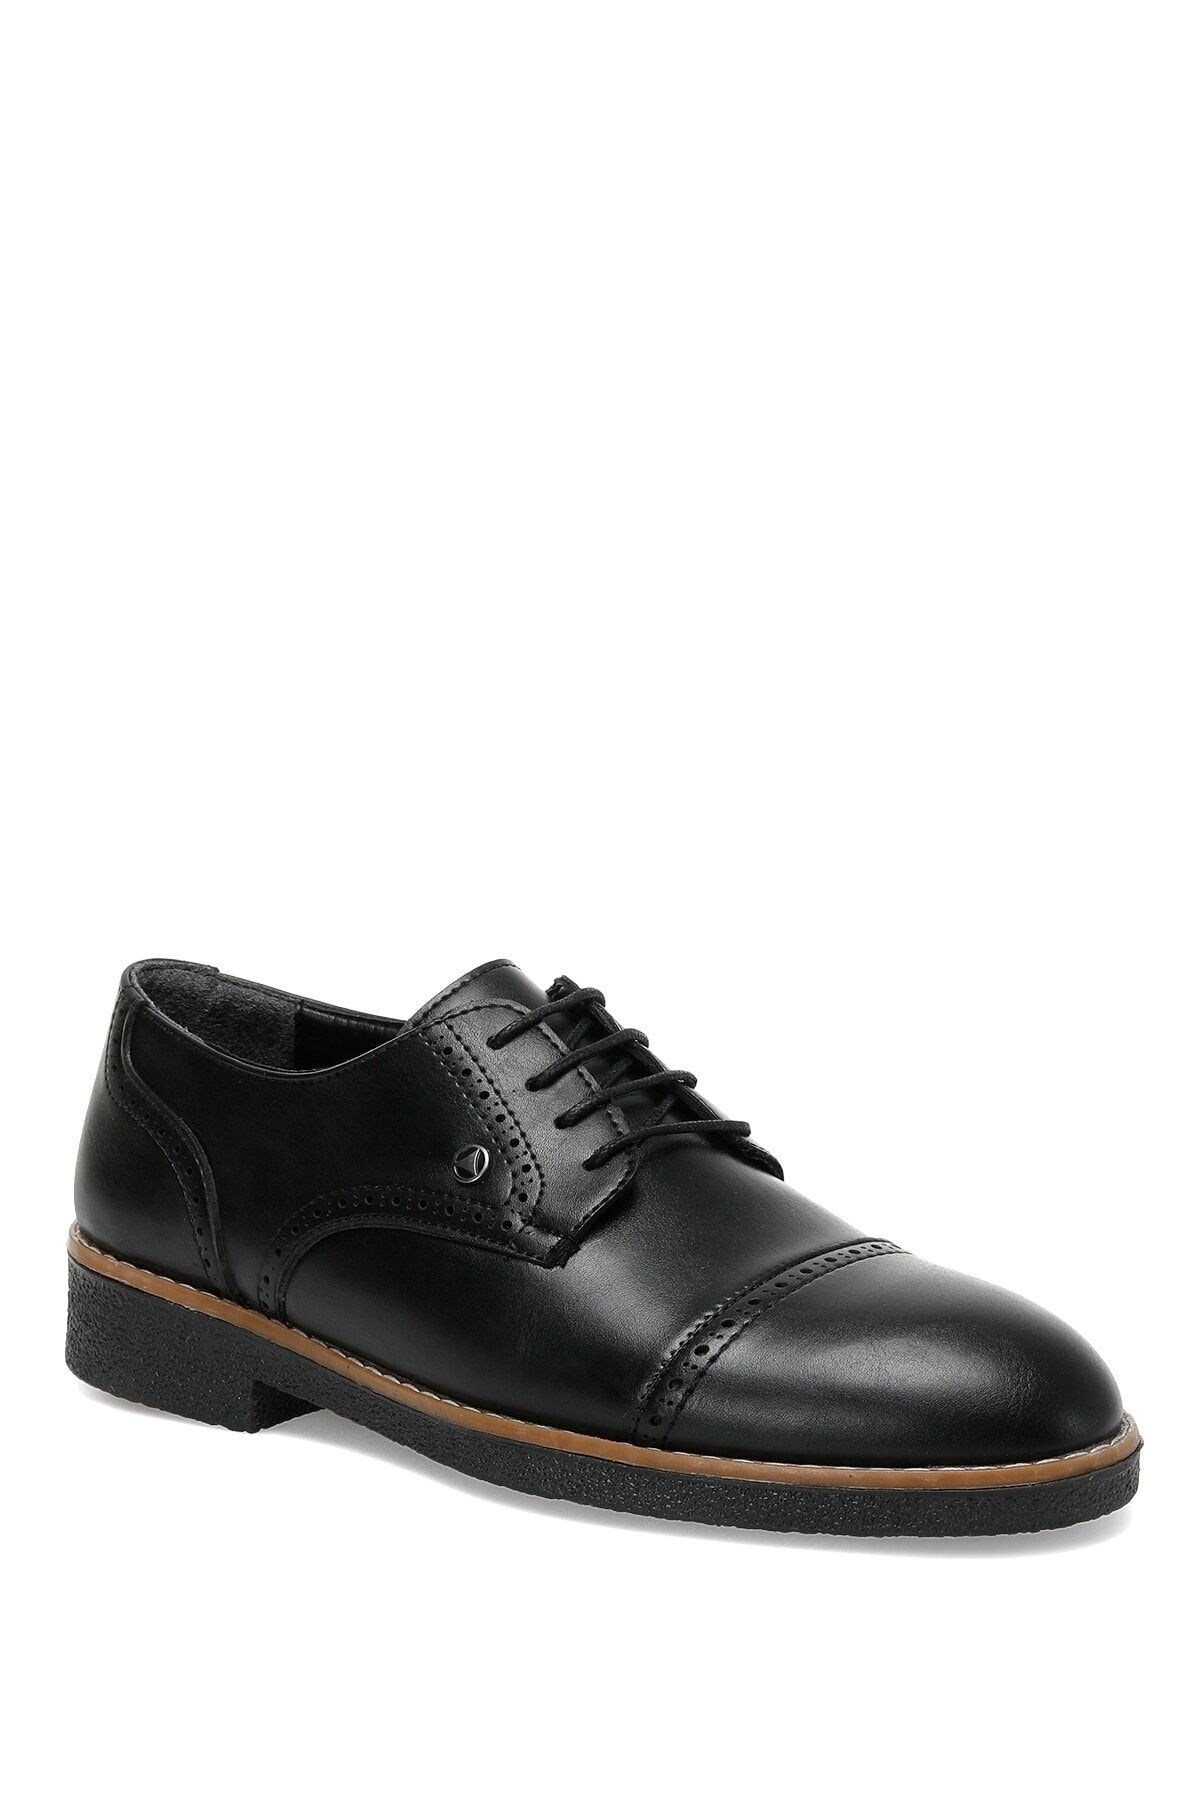 Salvano Carrey 2pr Siyah Erkek Klasik Ayakkabı